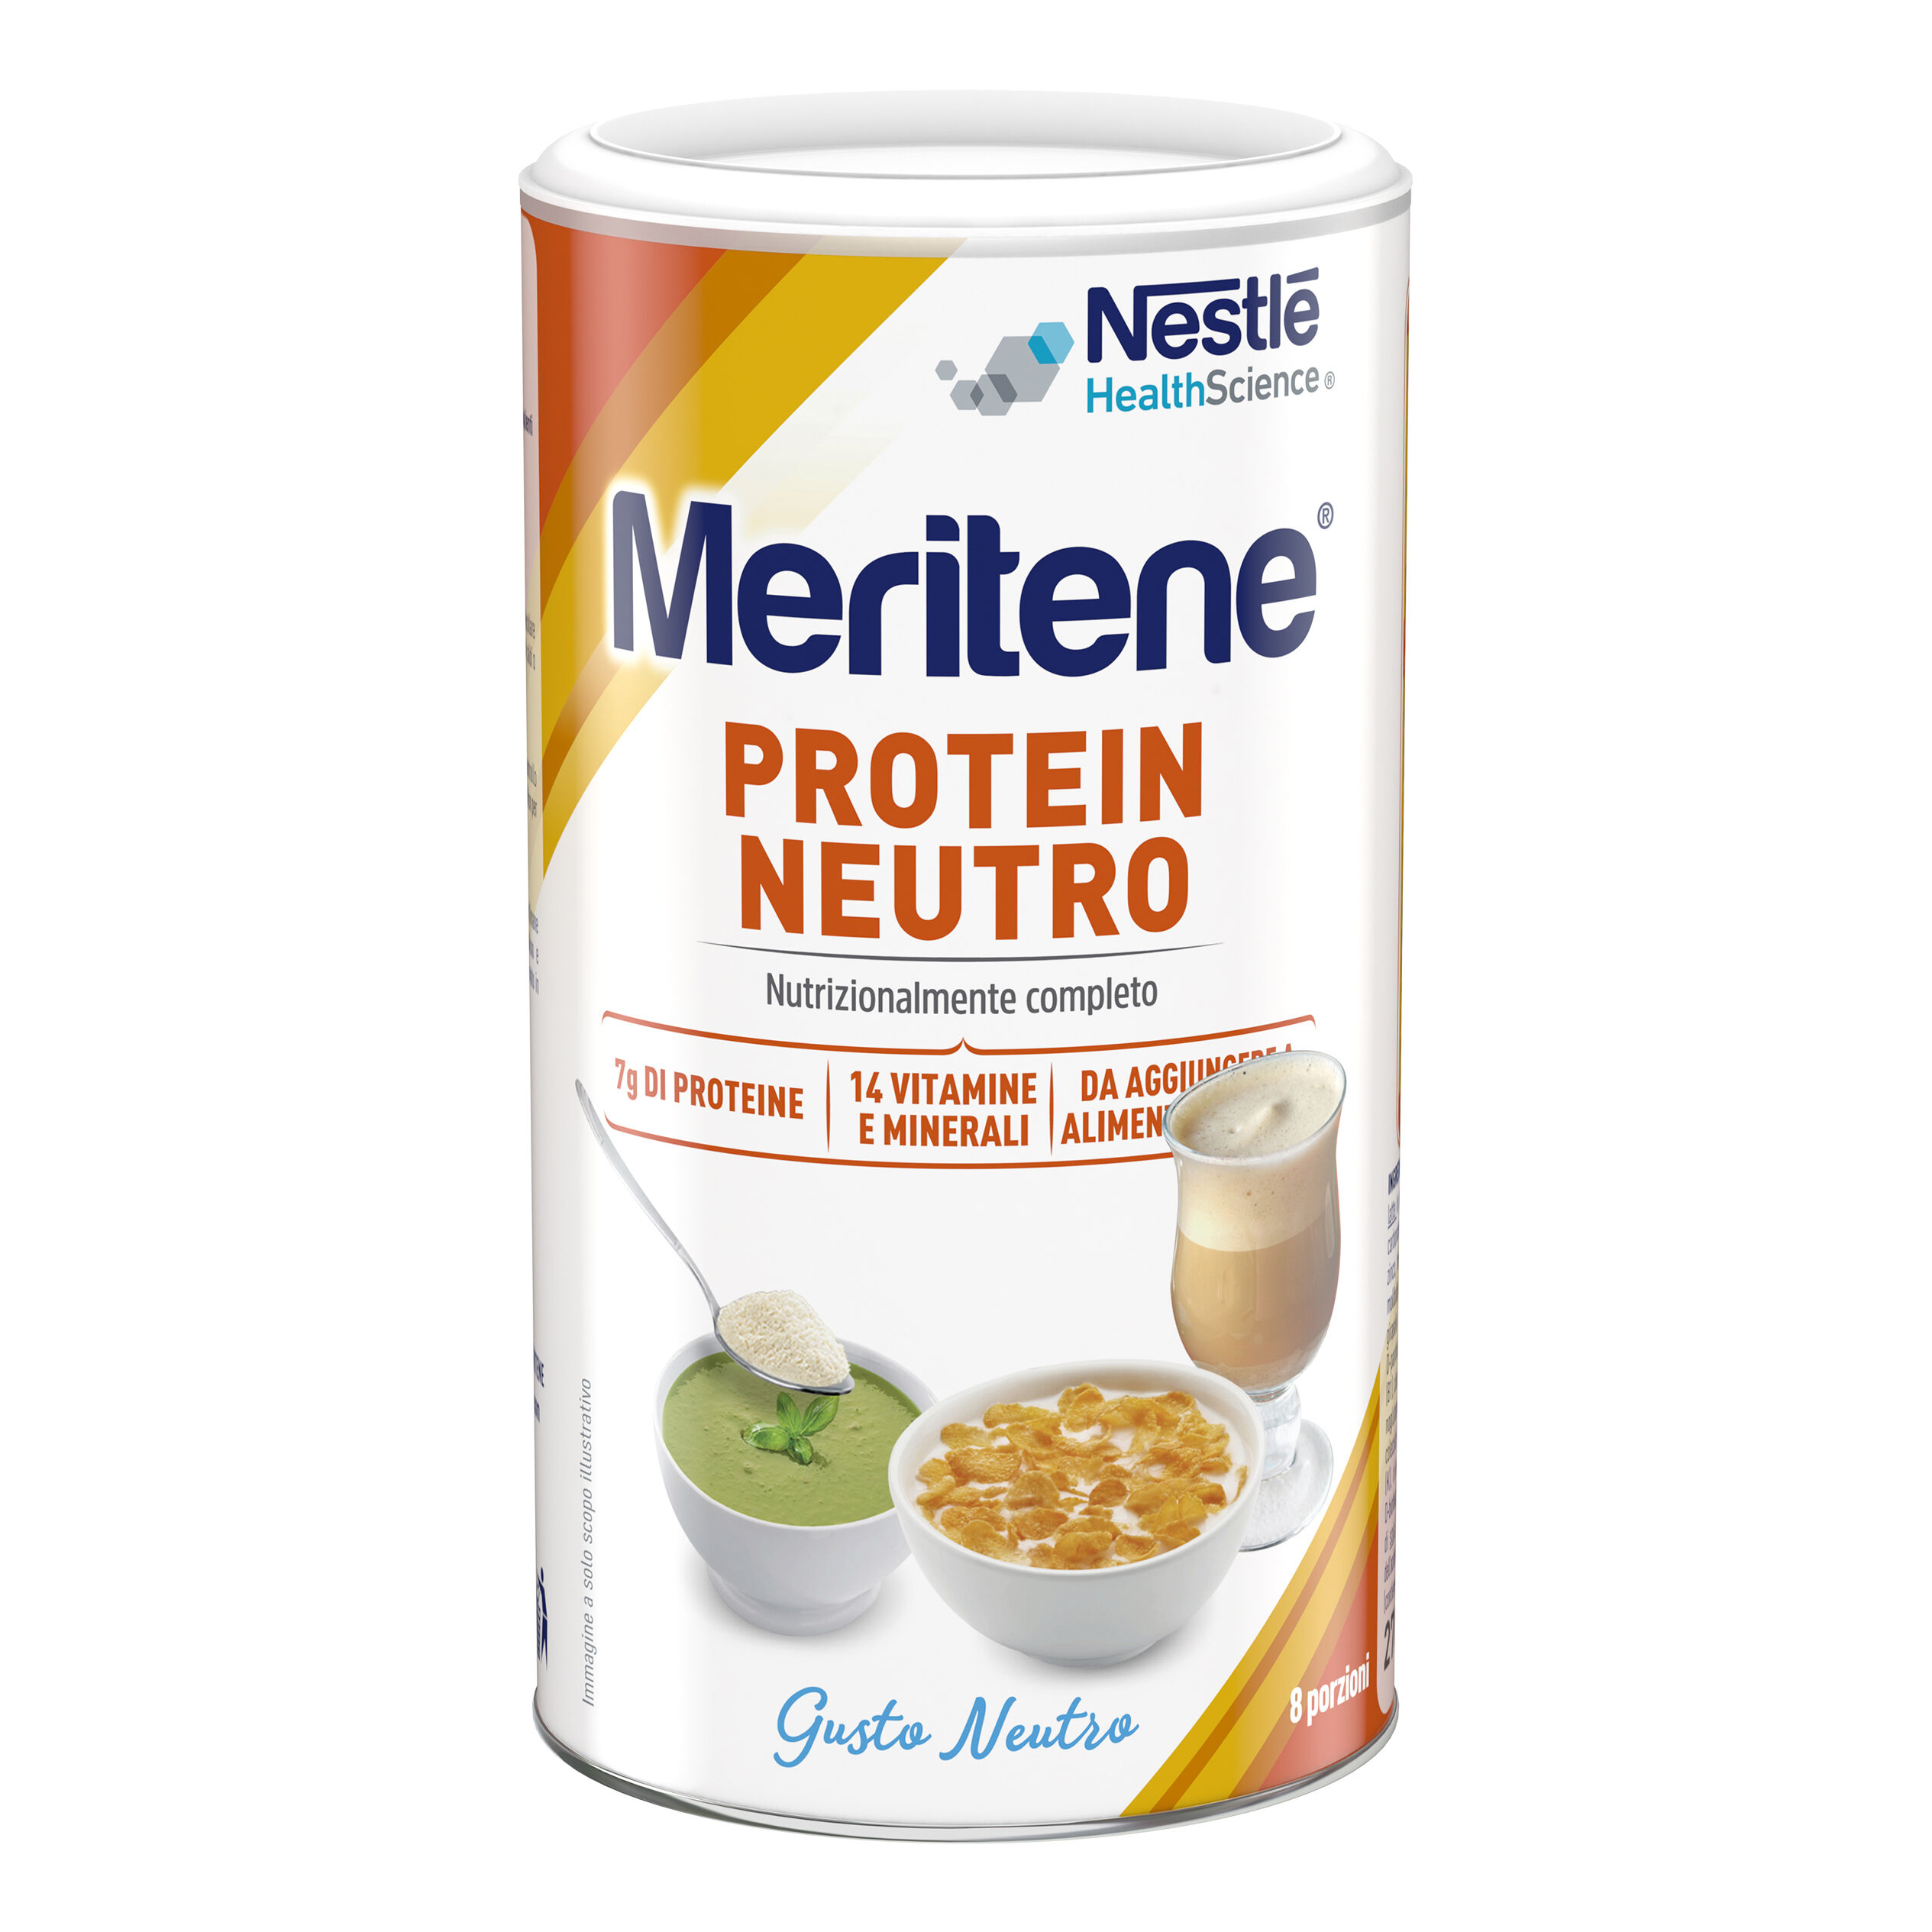 Nestle' It.Spa(Healthcare Nu.) Nestlé Meritene Protein Neutro 270g - Integratore Proteico di Qualità